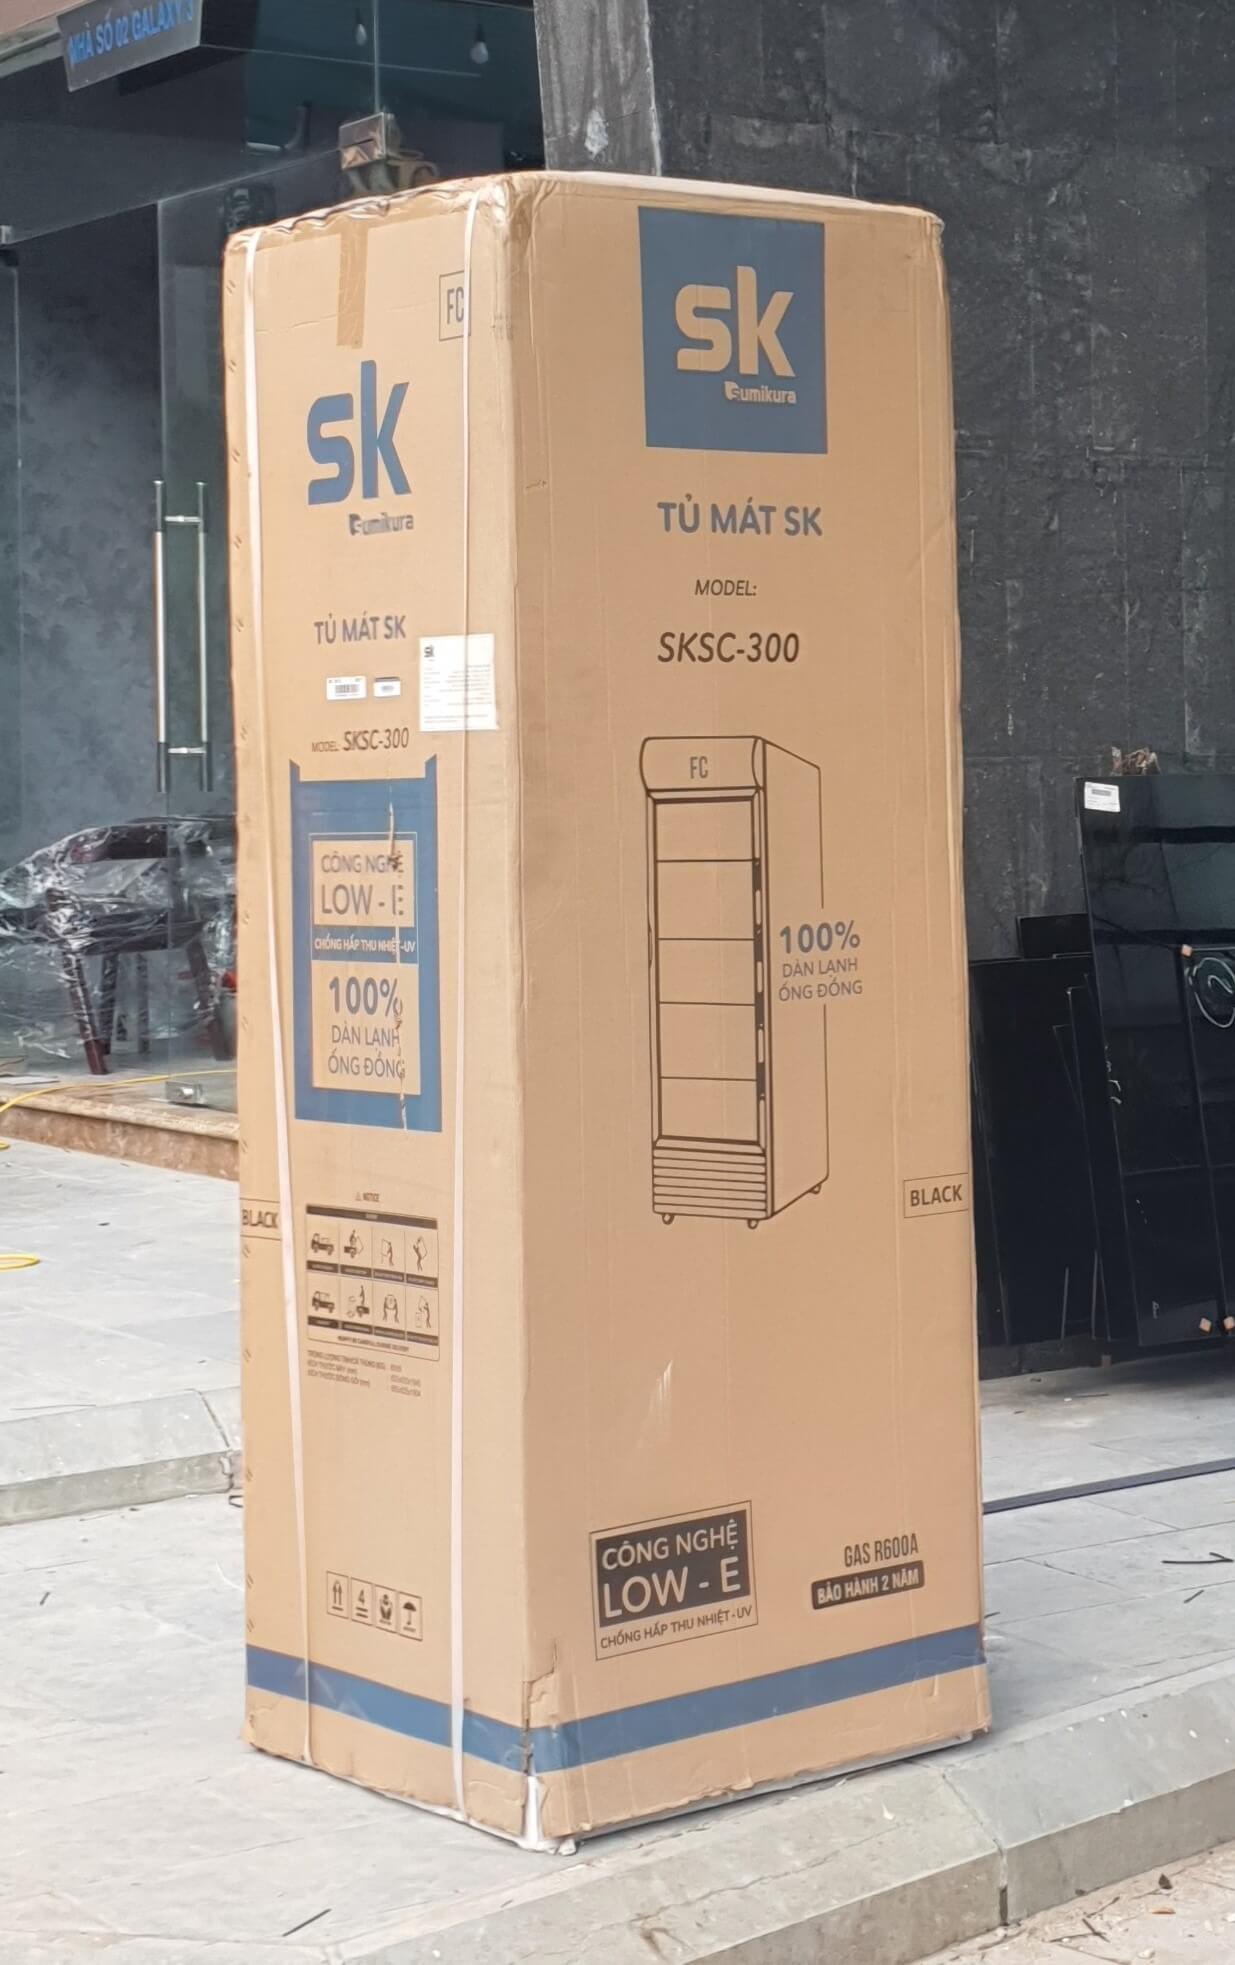 Hình ảnh đóng gói tủ mát SKSC-300